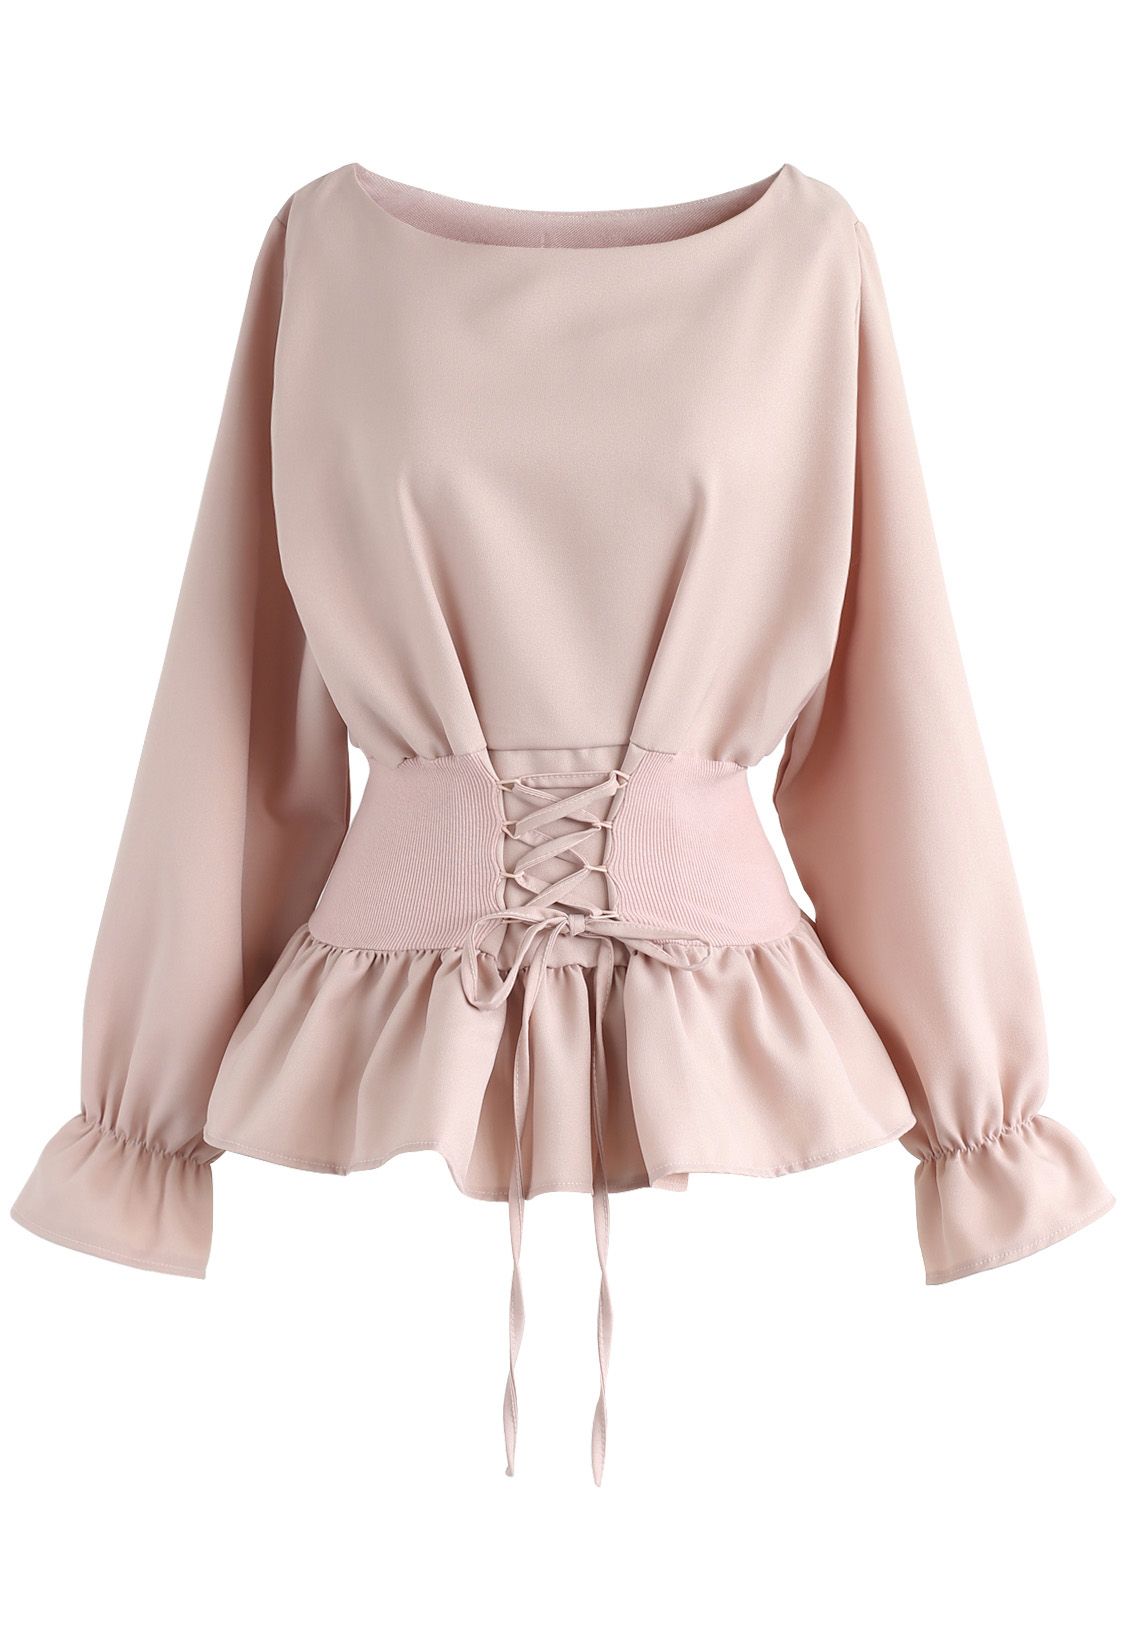 Elegante Blusa Rosa con Cintas para Atar en la Cintura